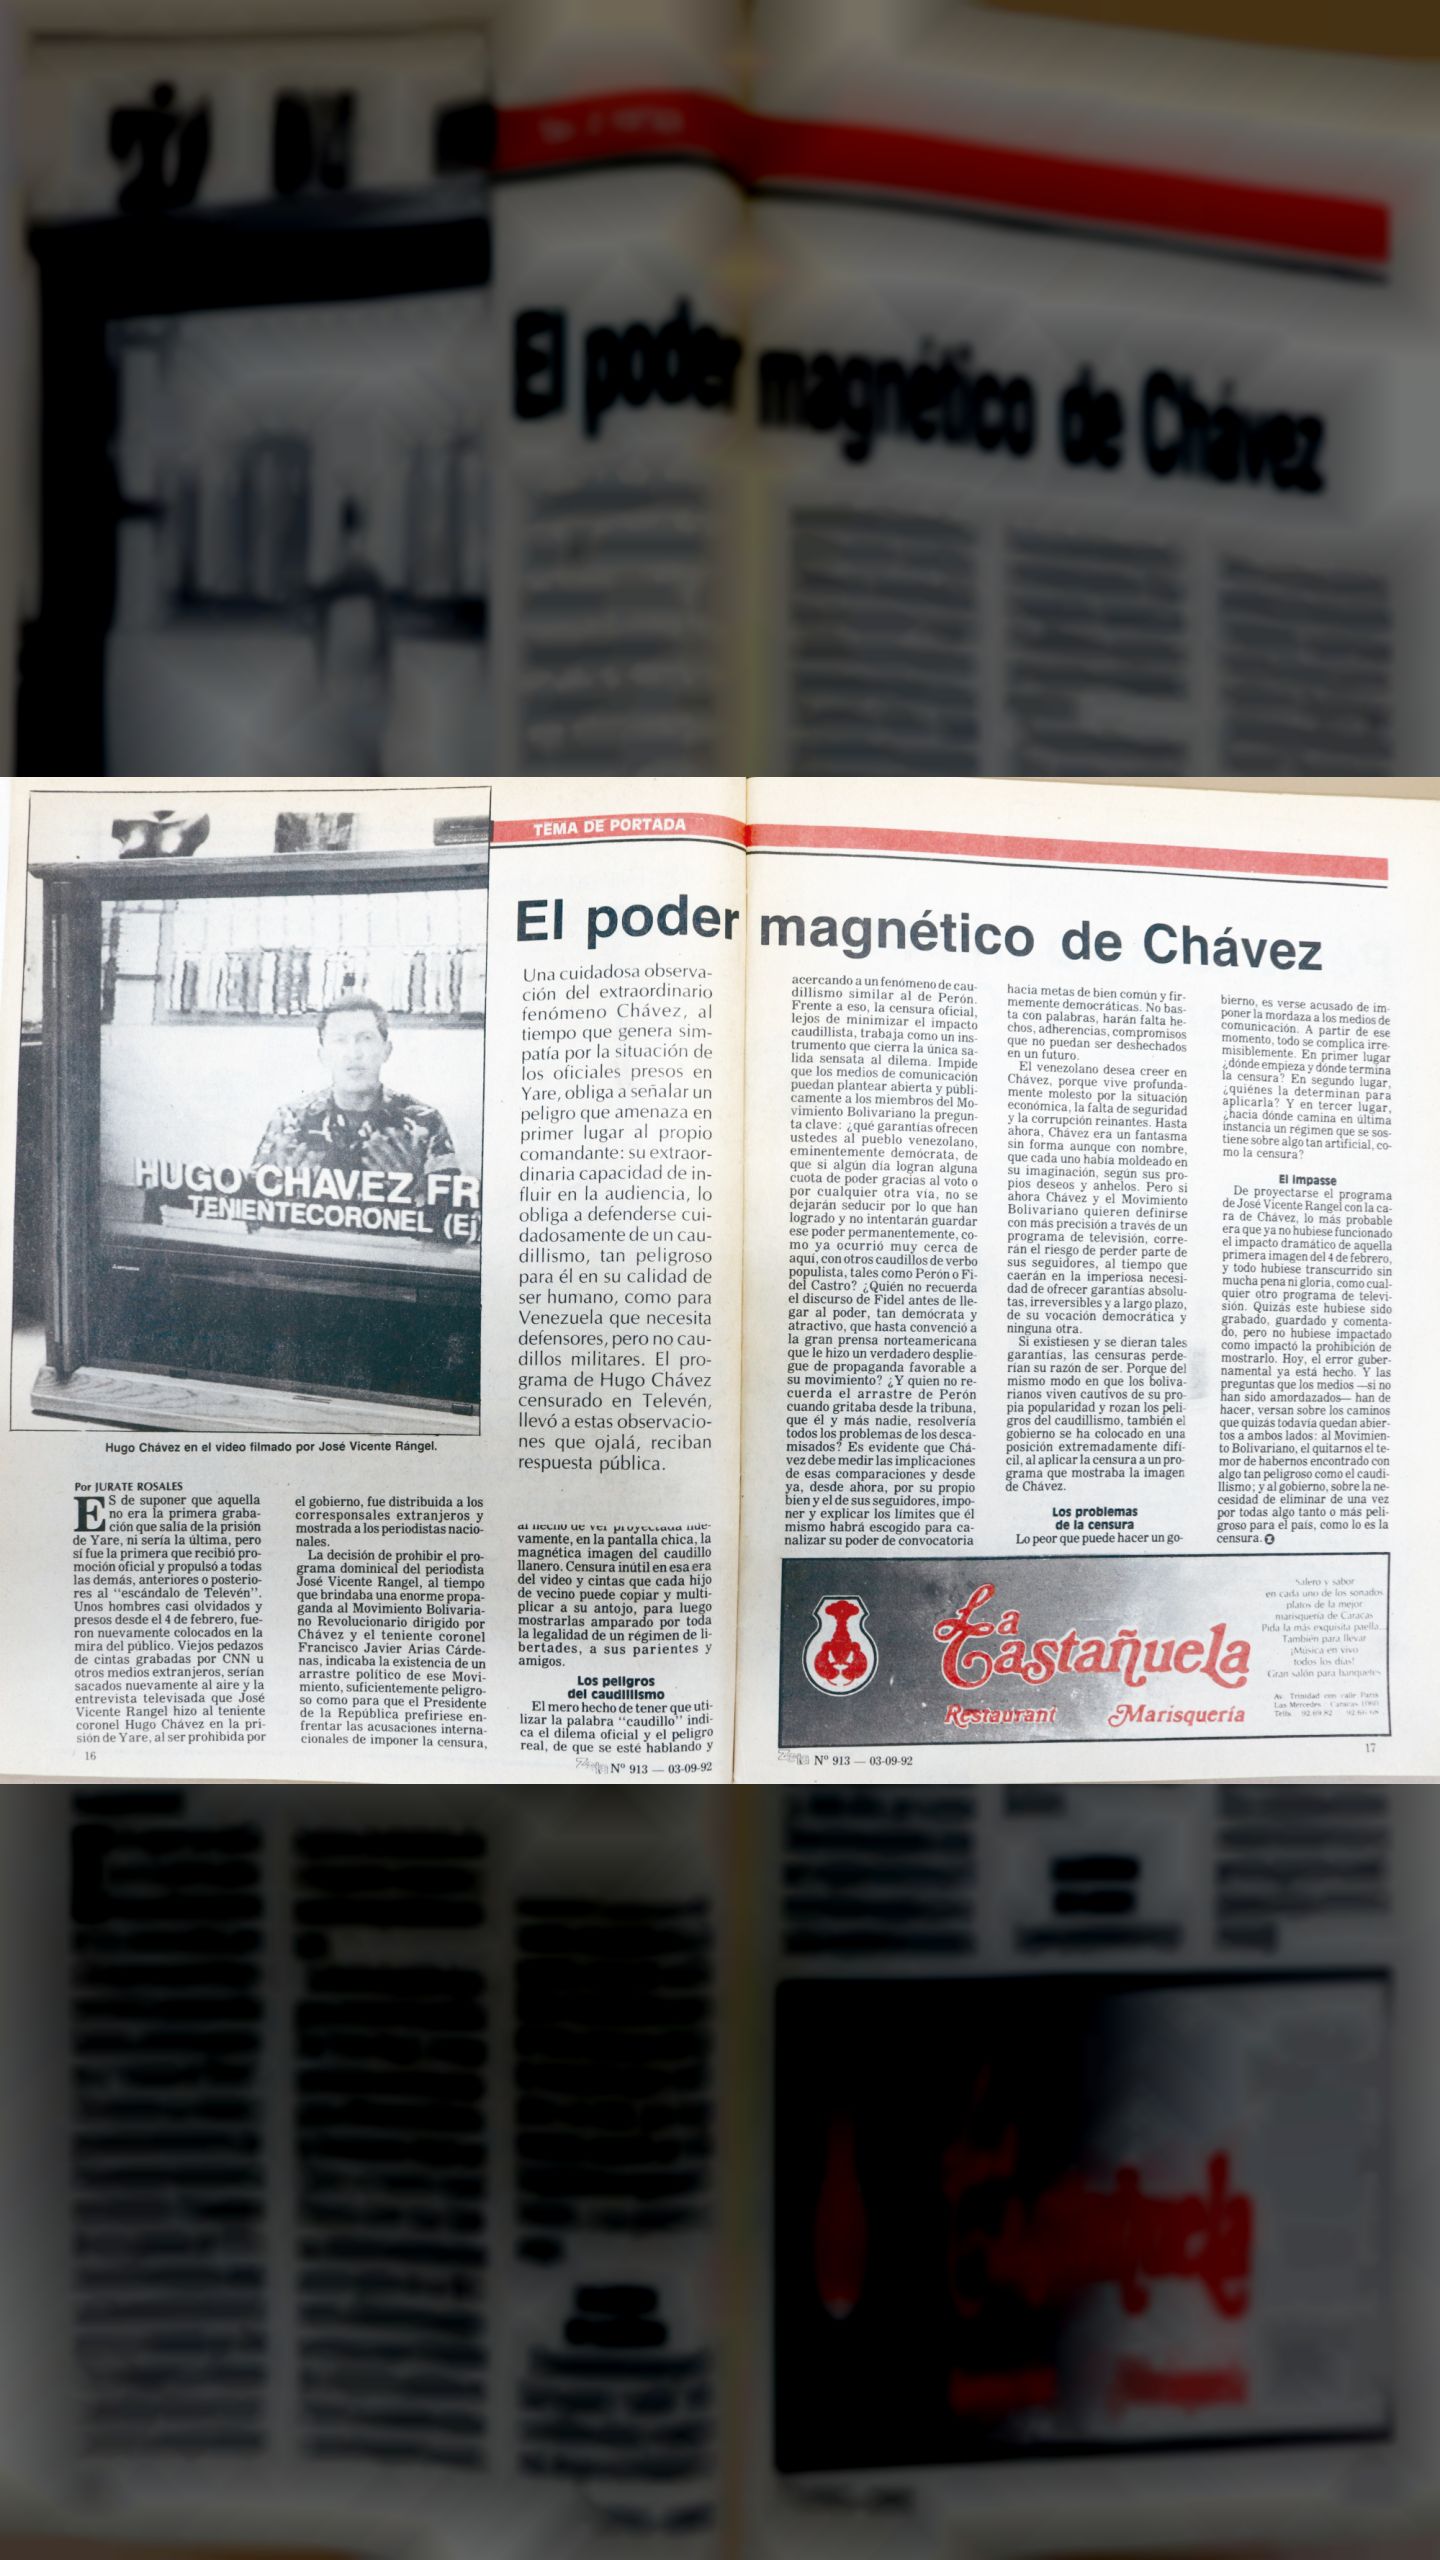 El poder magnético de Chávez (Zeta, 03 de septiembre 1992)